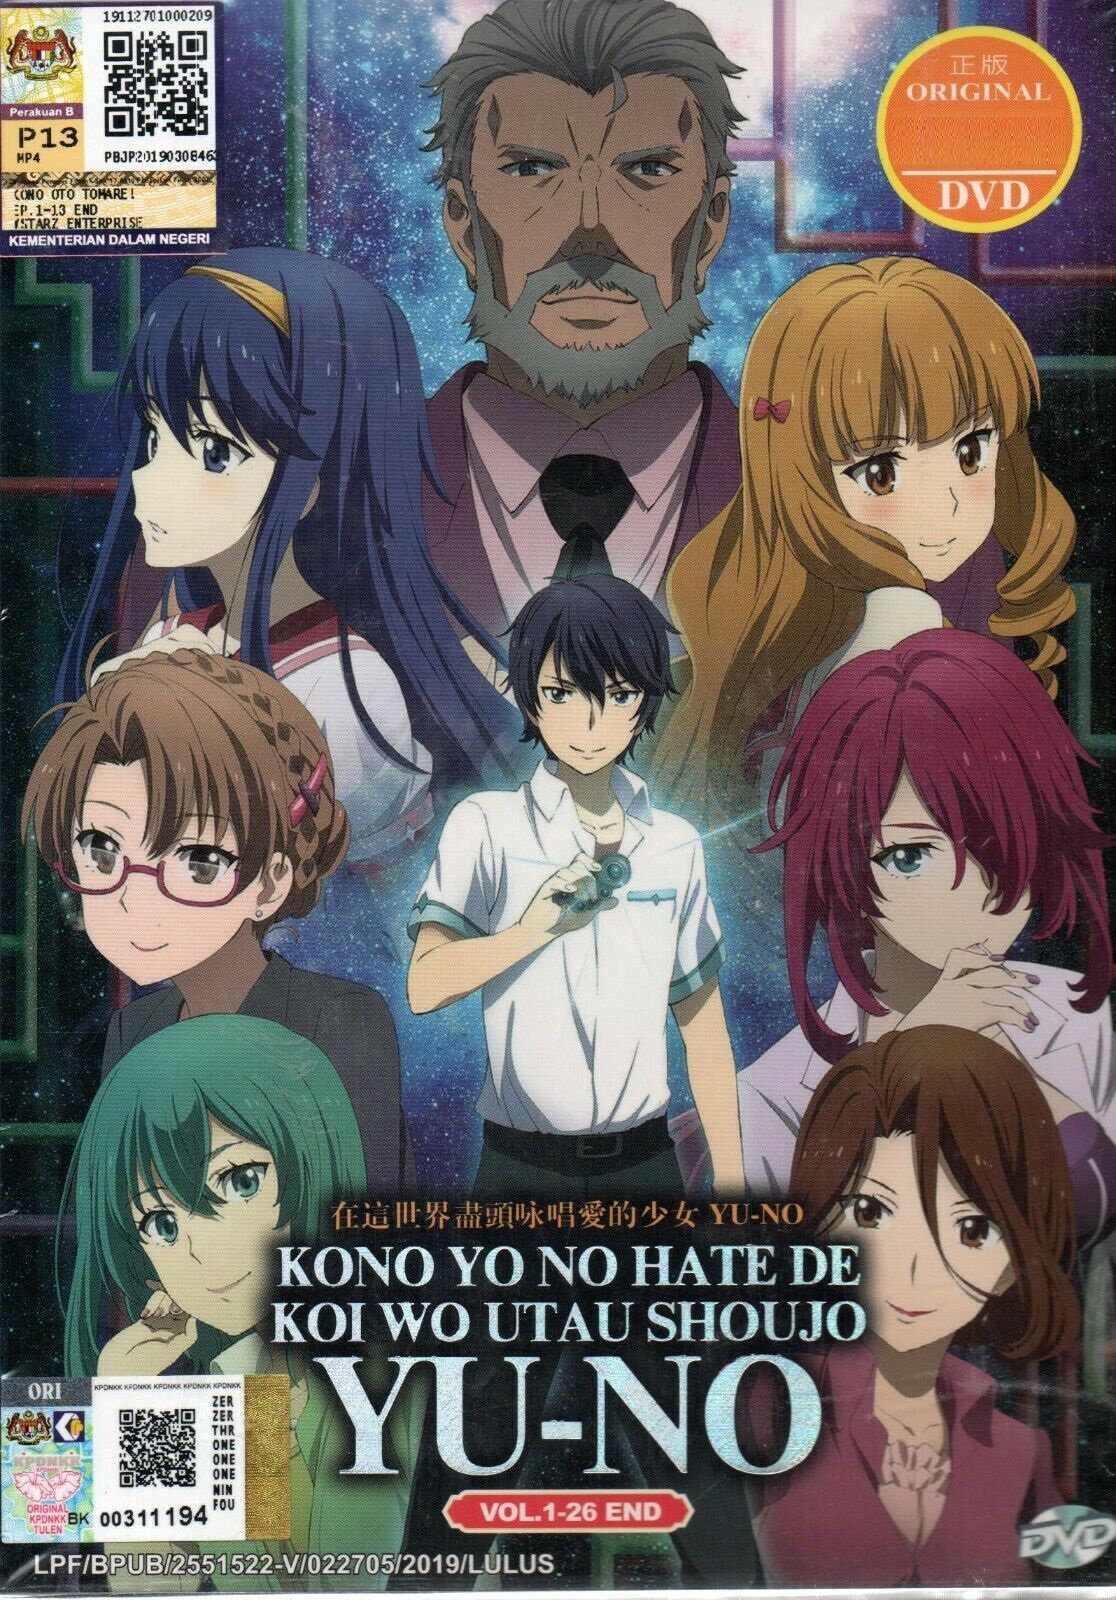 Bokutachi wa Benkyou ga Deki (Season 2) DVD (Eps :1 to 13 end) English  Subtitle